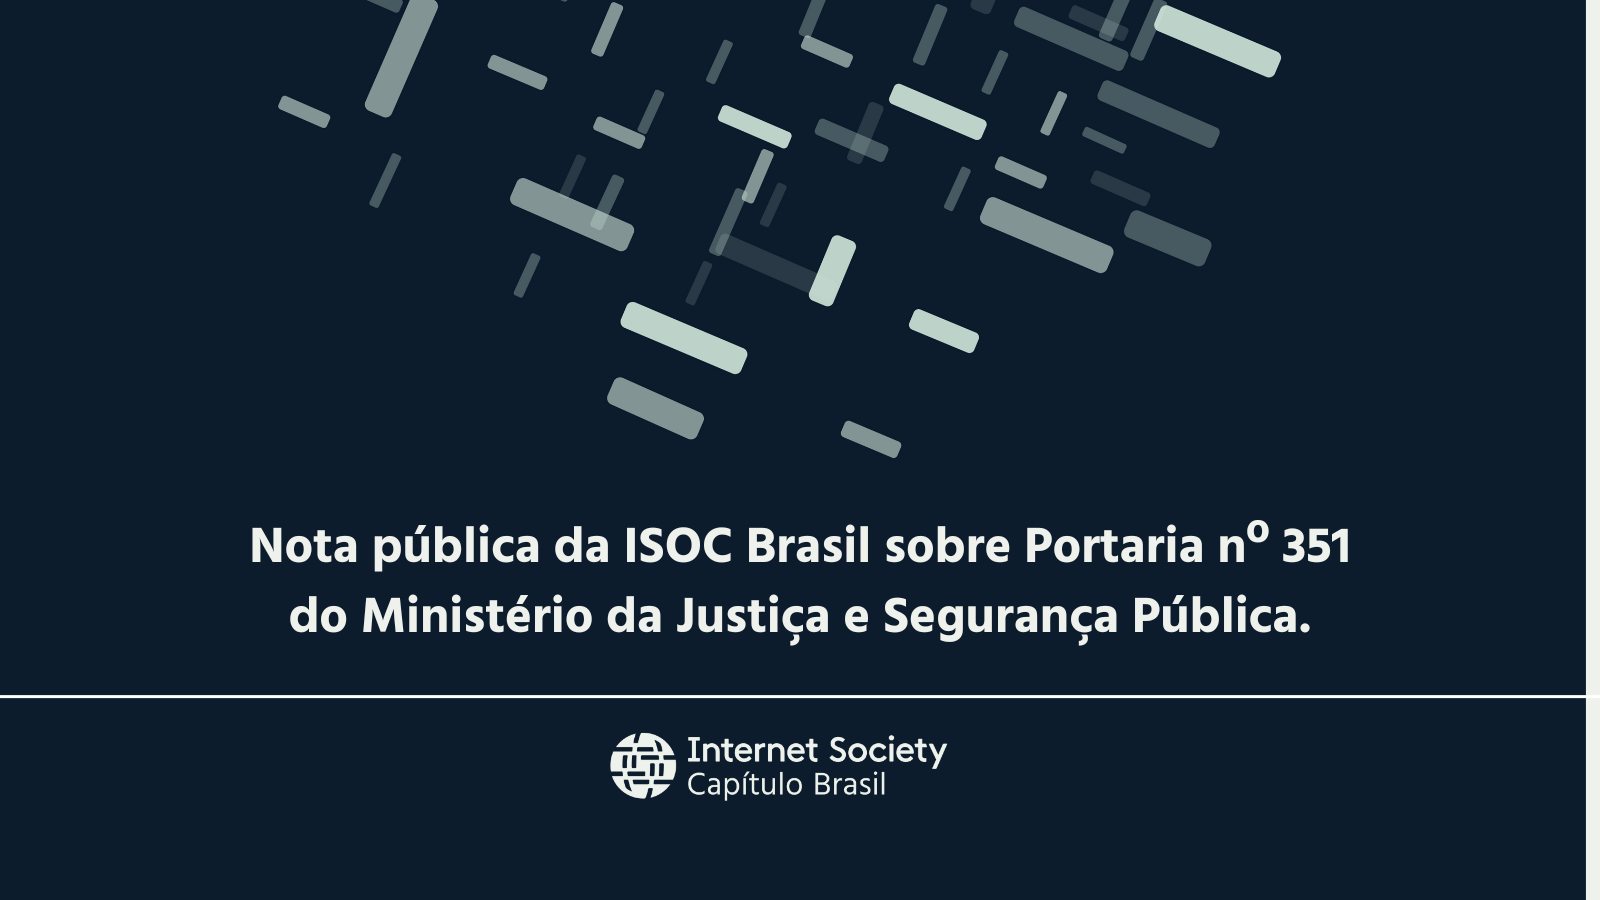 Nota pública da ISOC Brasil sobre Portaria nº 351 do Ministério da Justiça e Segurança Pública.